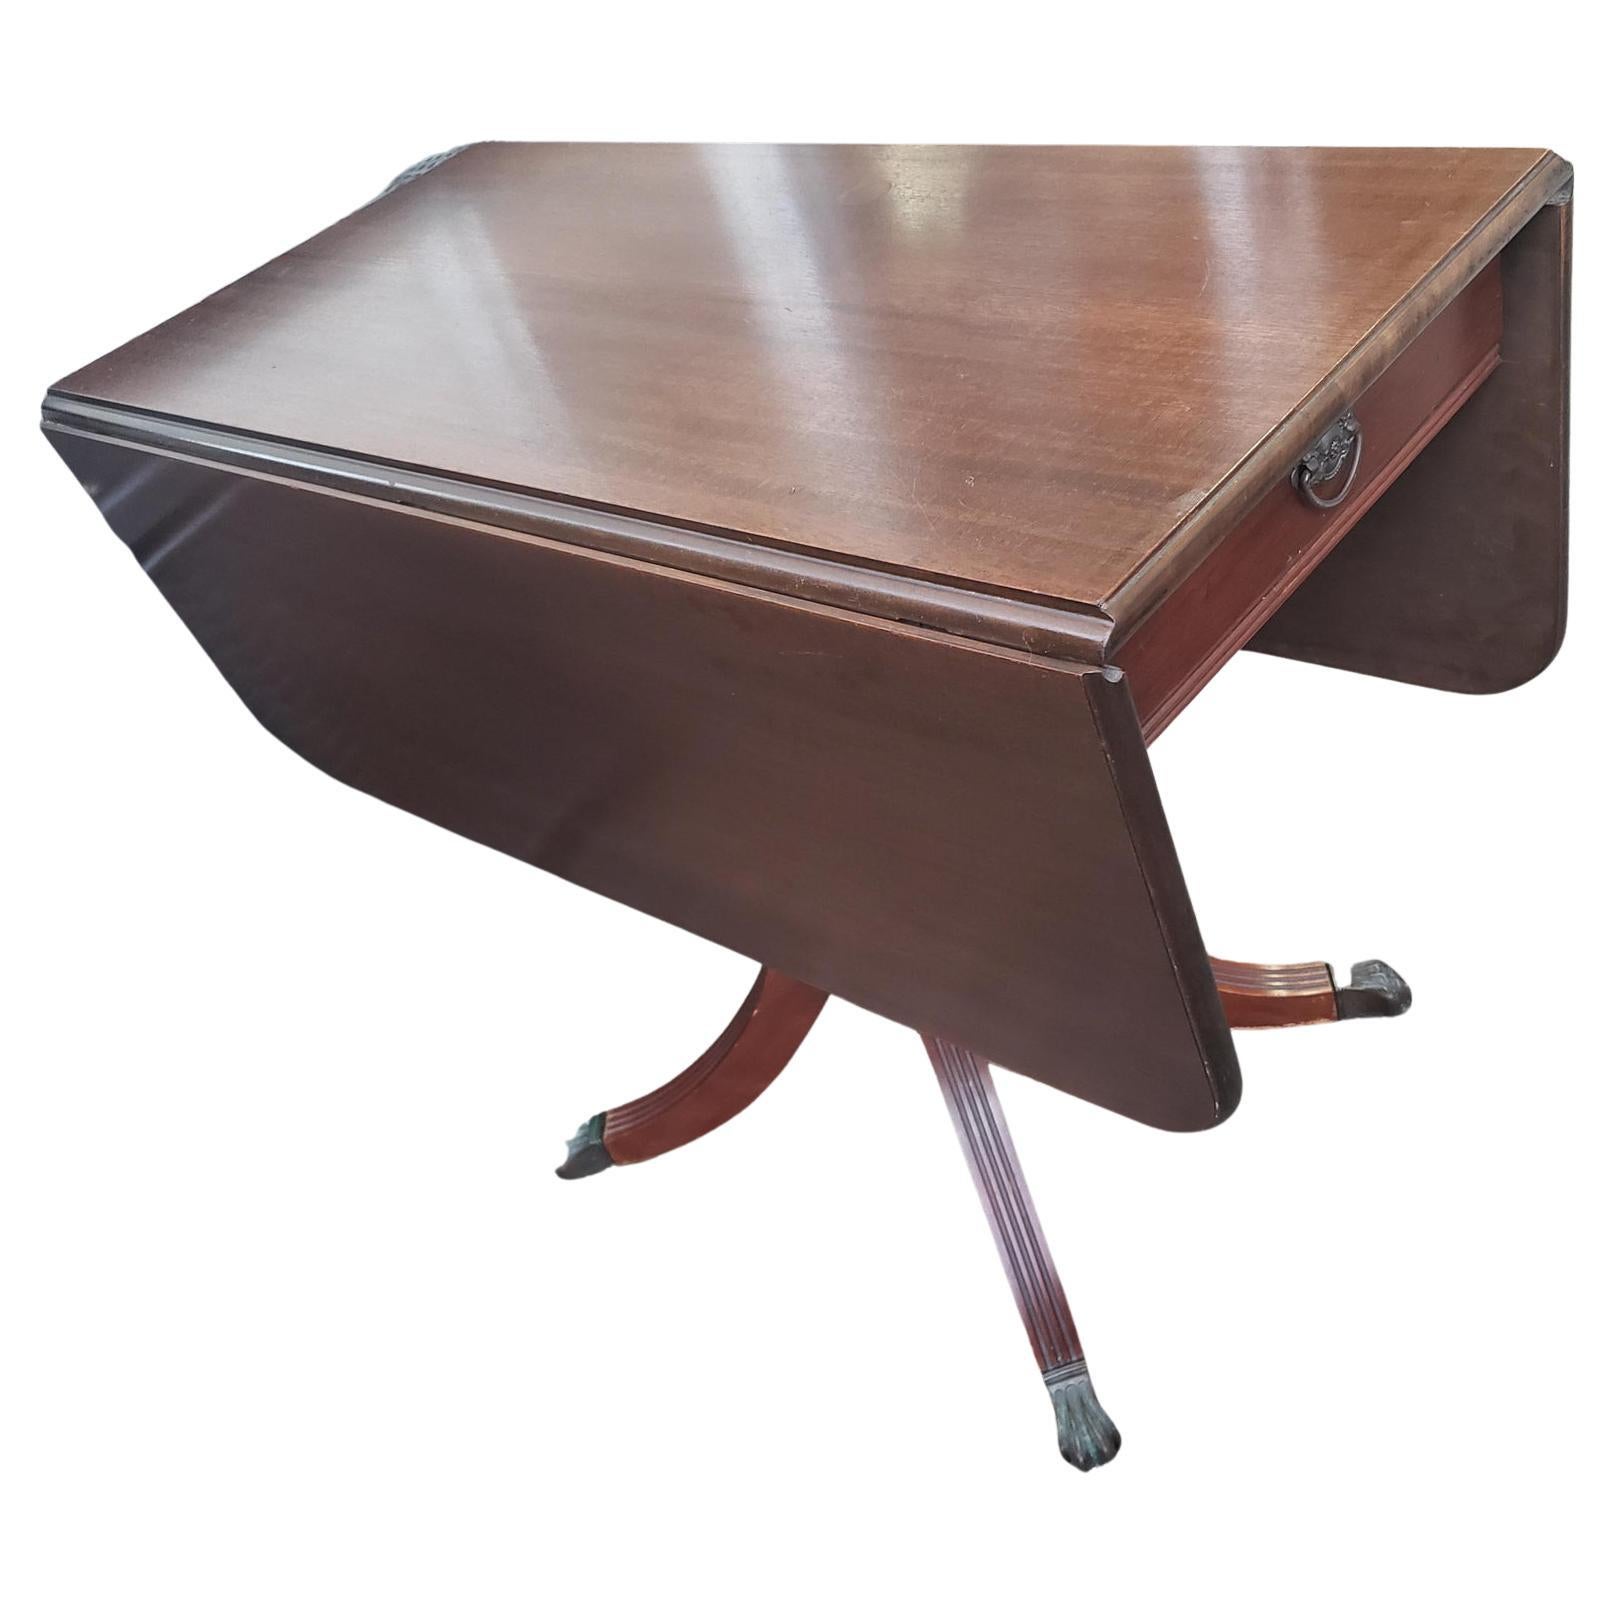 Prestigieux Brandt furniture vintage dropleaf pedestal table. Il est doté d'un tiroir latéral à queue d'aronde élégant, d'une finition semi-brillante polie et frottée à la main. Le piédestal de style Sheraton comporte 4 pieds cannelés qui se